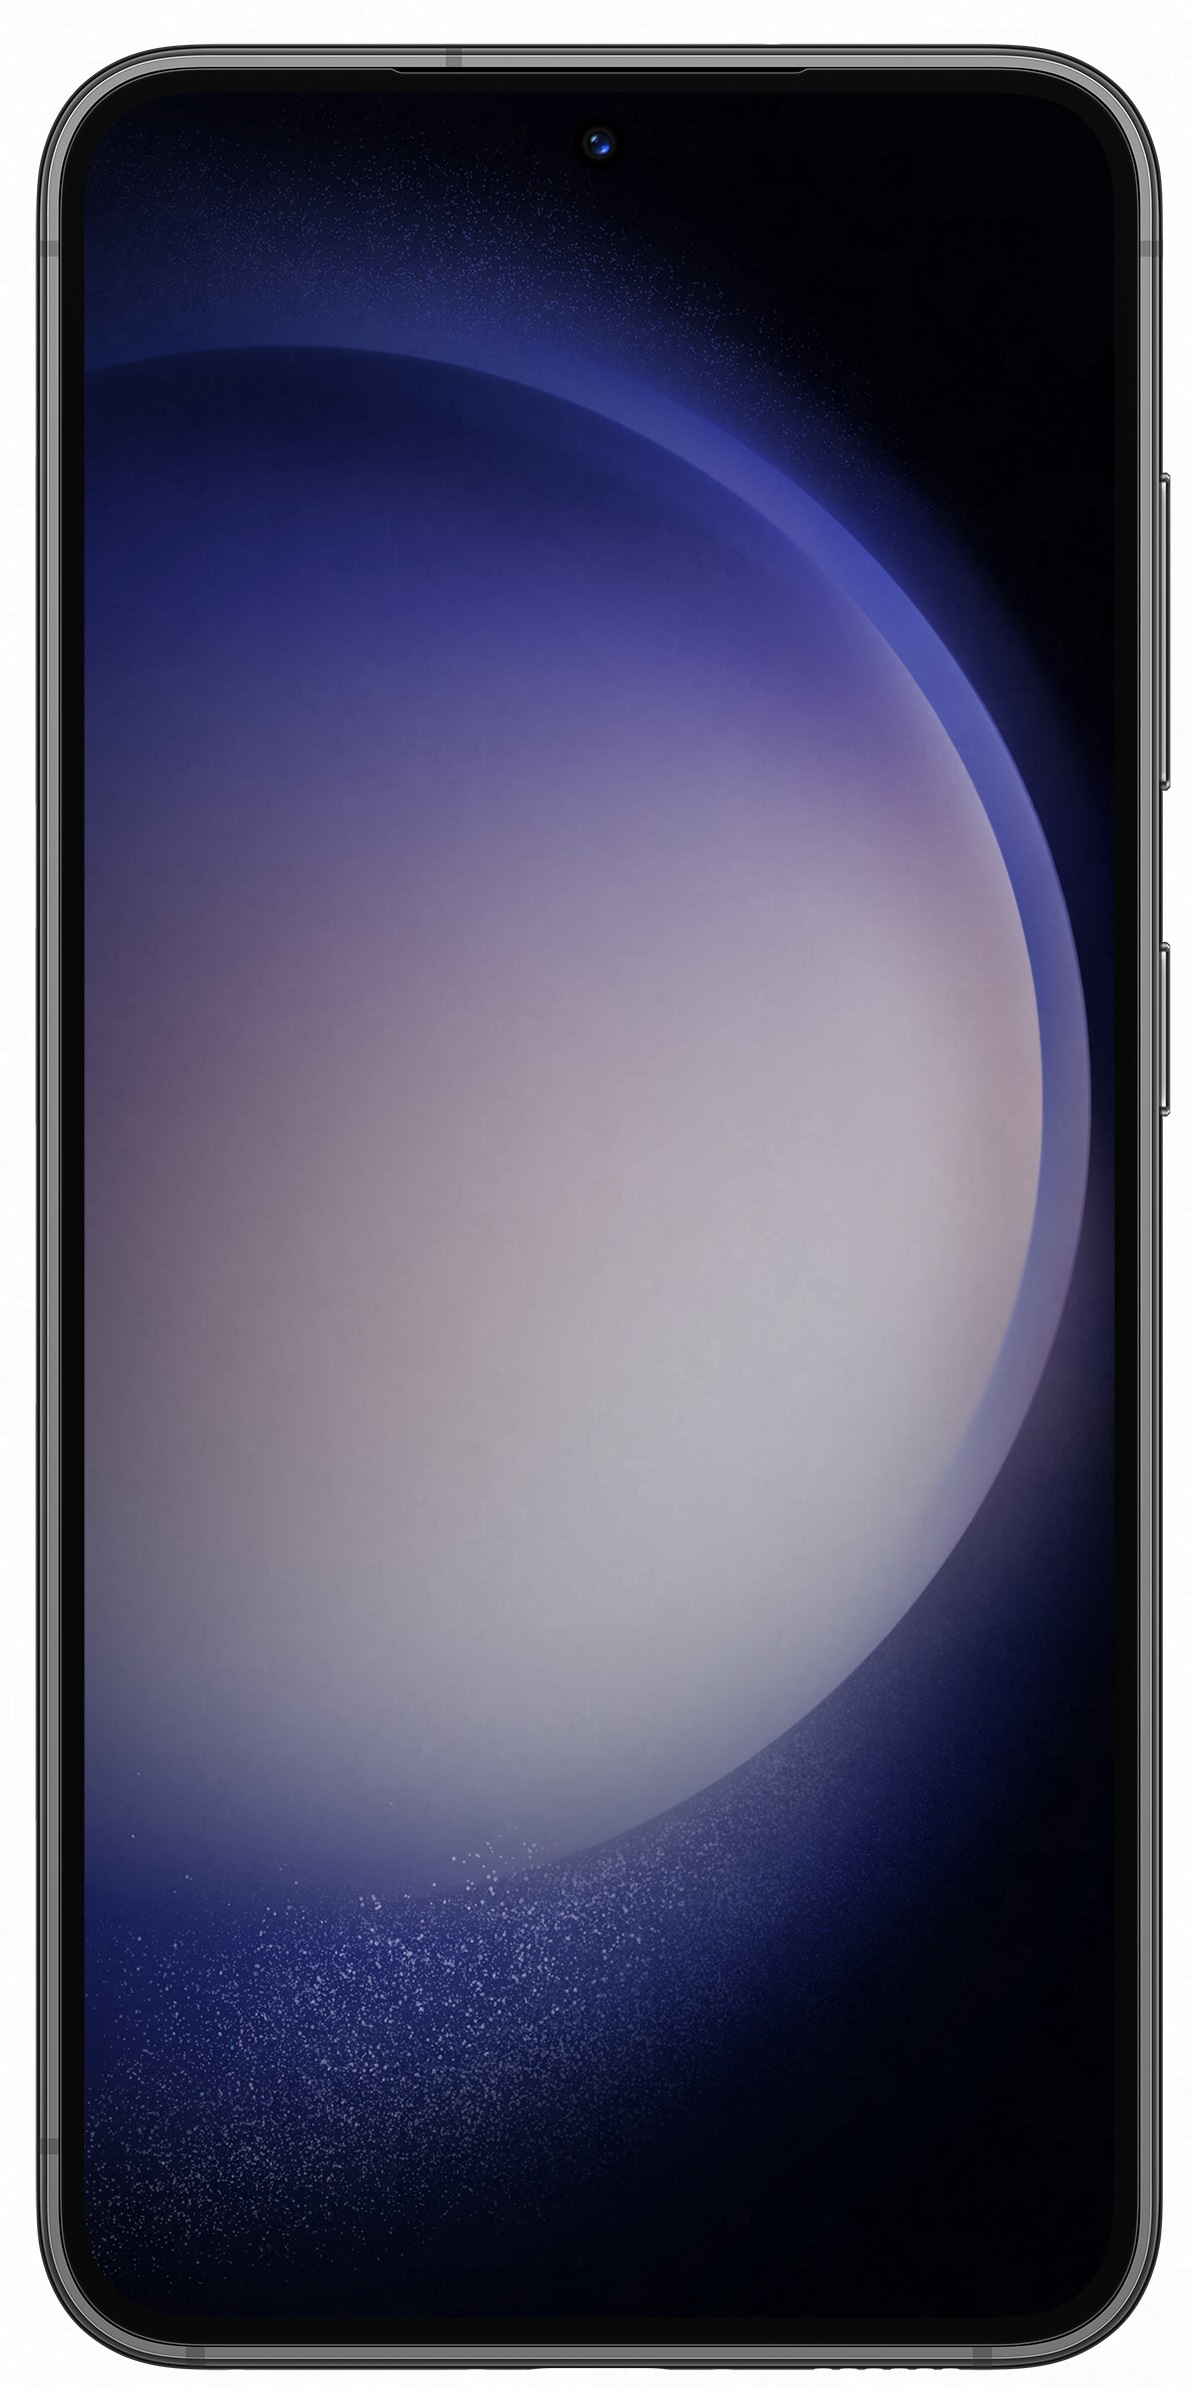 Samsung Galaxy S23 5G Edition Entreprise noir 128Go